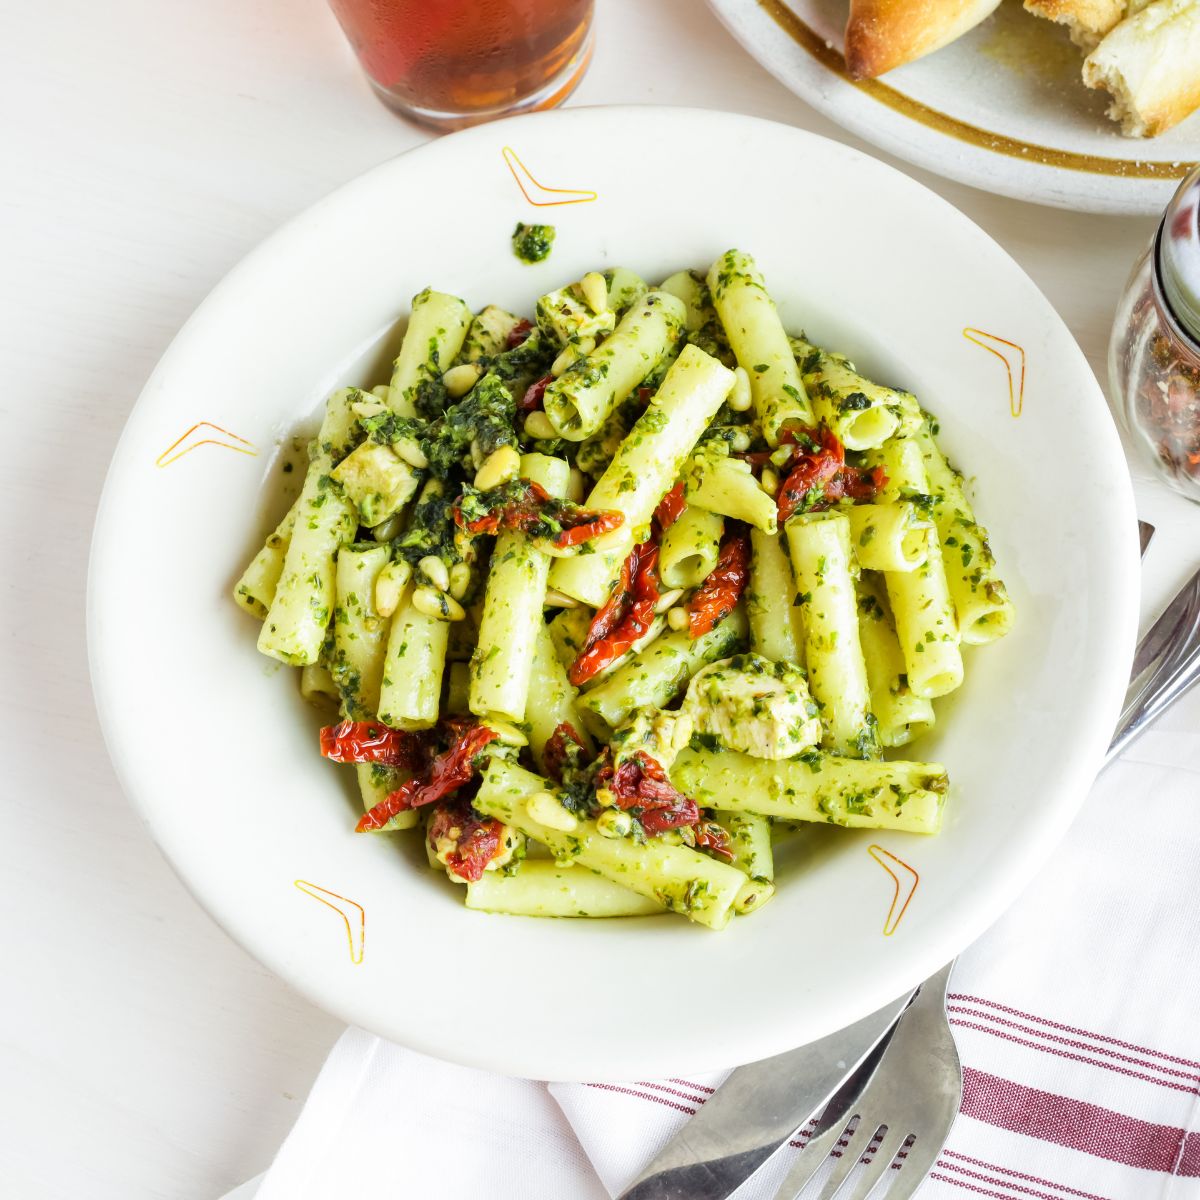 Pesto alla Genovese- Perfect for pasta, sandwiches, or veggies